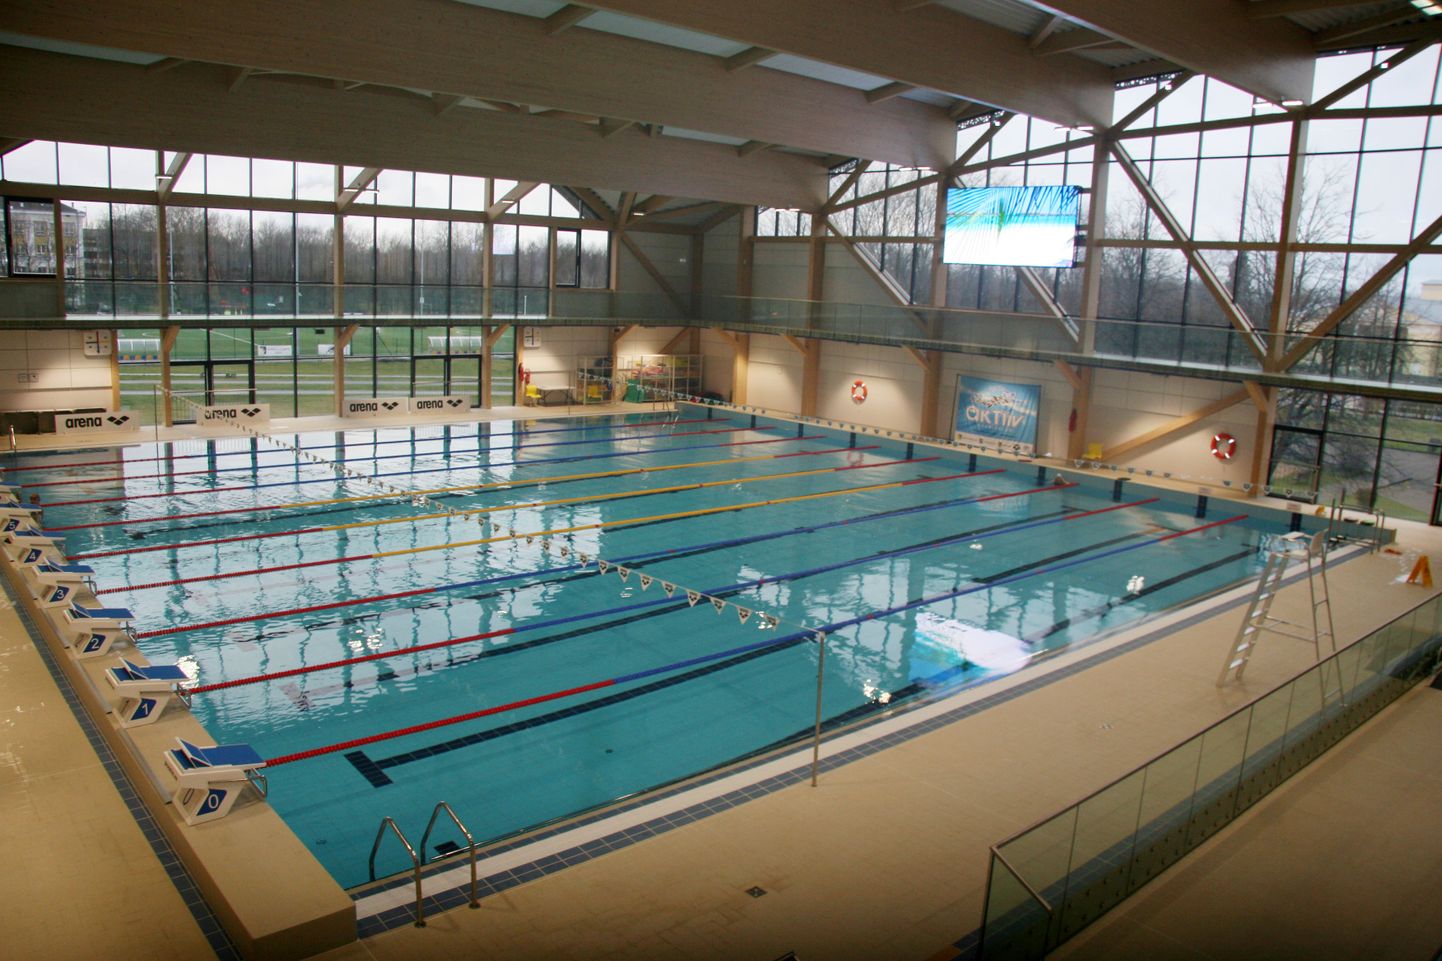 Бассейн спортцентра "Wiru" уже опробовали и высоко оценили клубы плавания из разных городов страны.